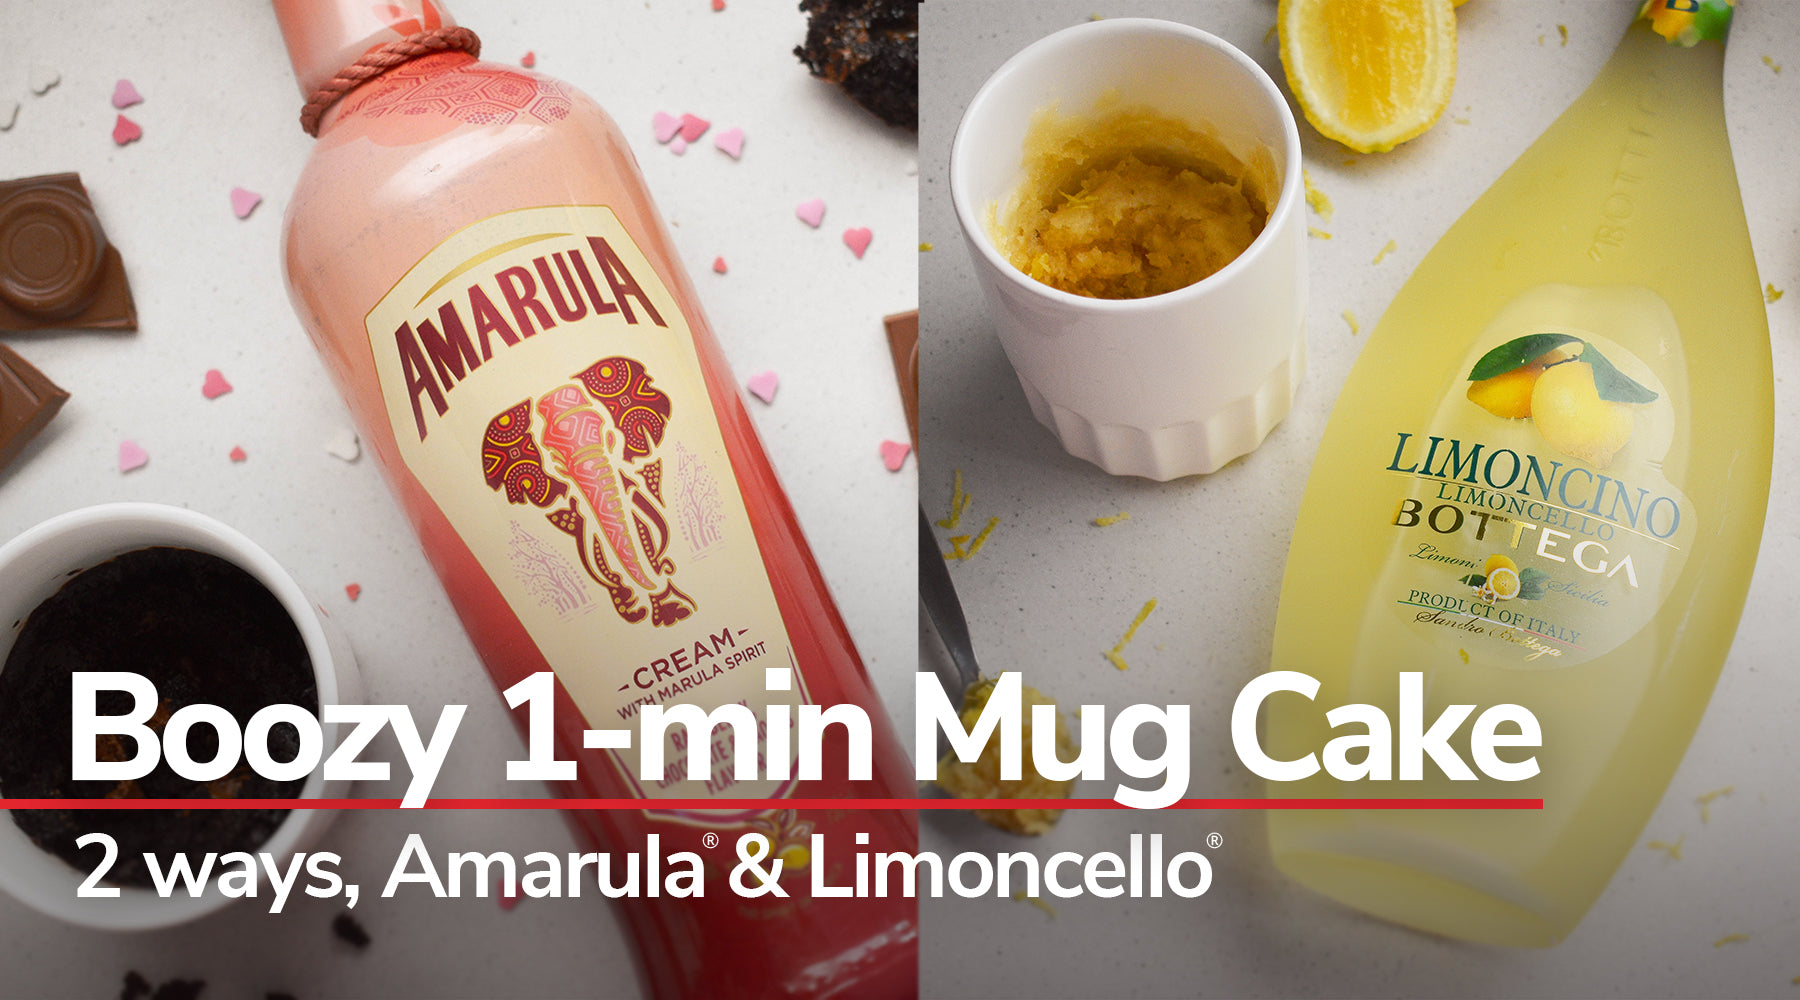 1-min Mug Cake in Baobab African Lim & and Amarula Raspberry Chocolate